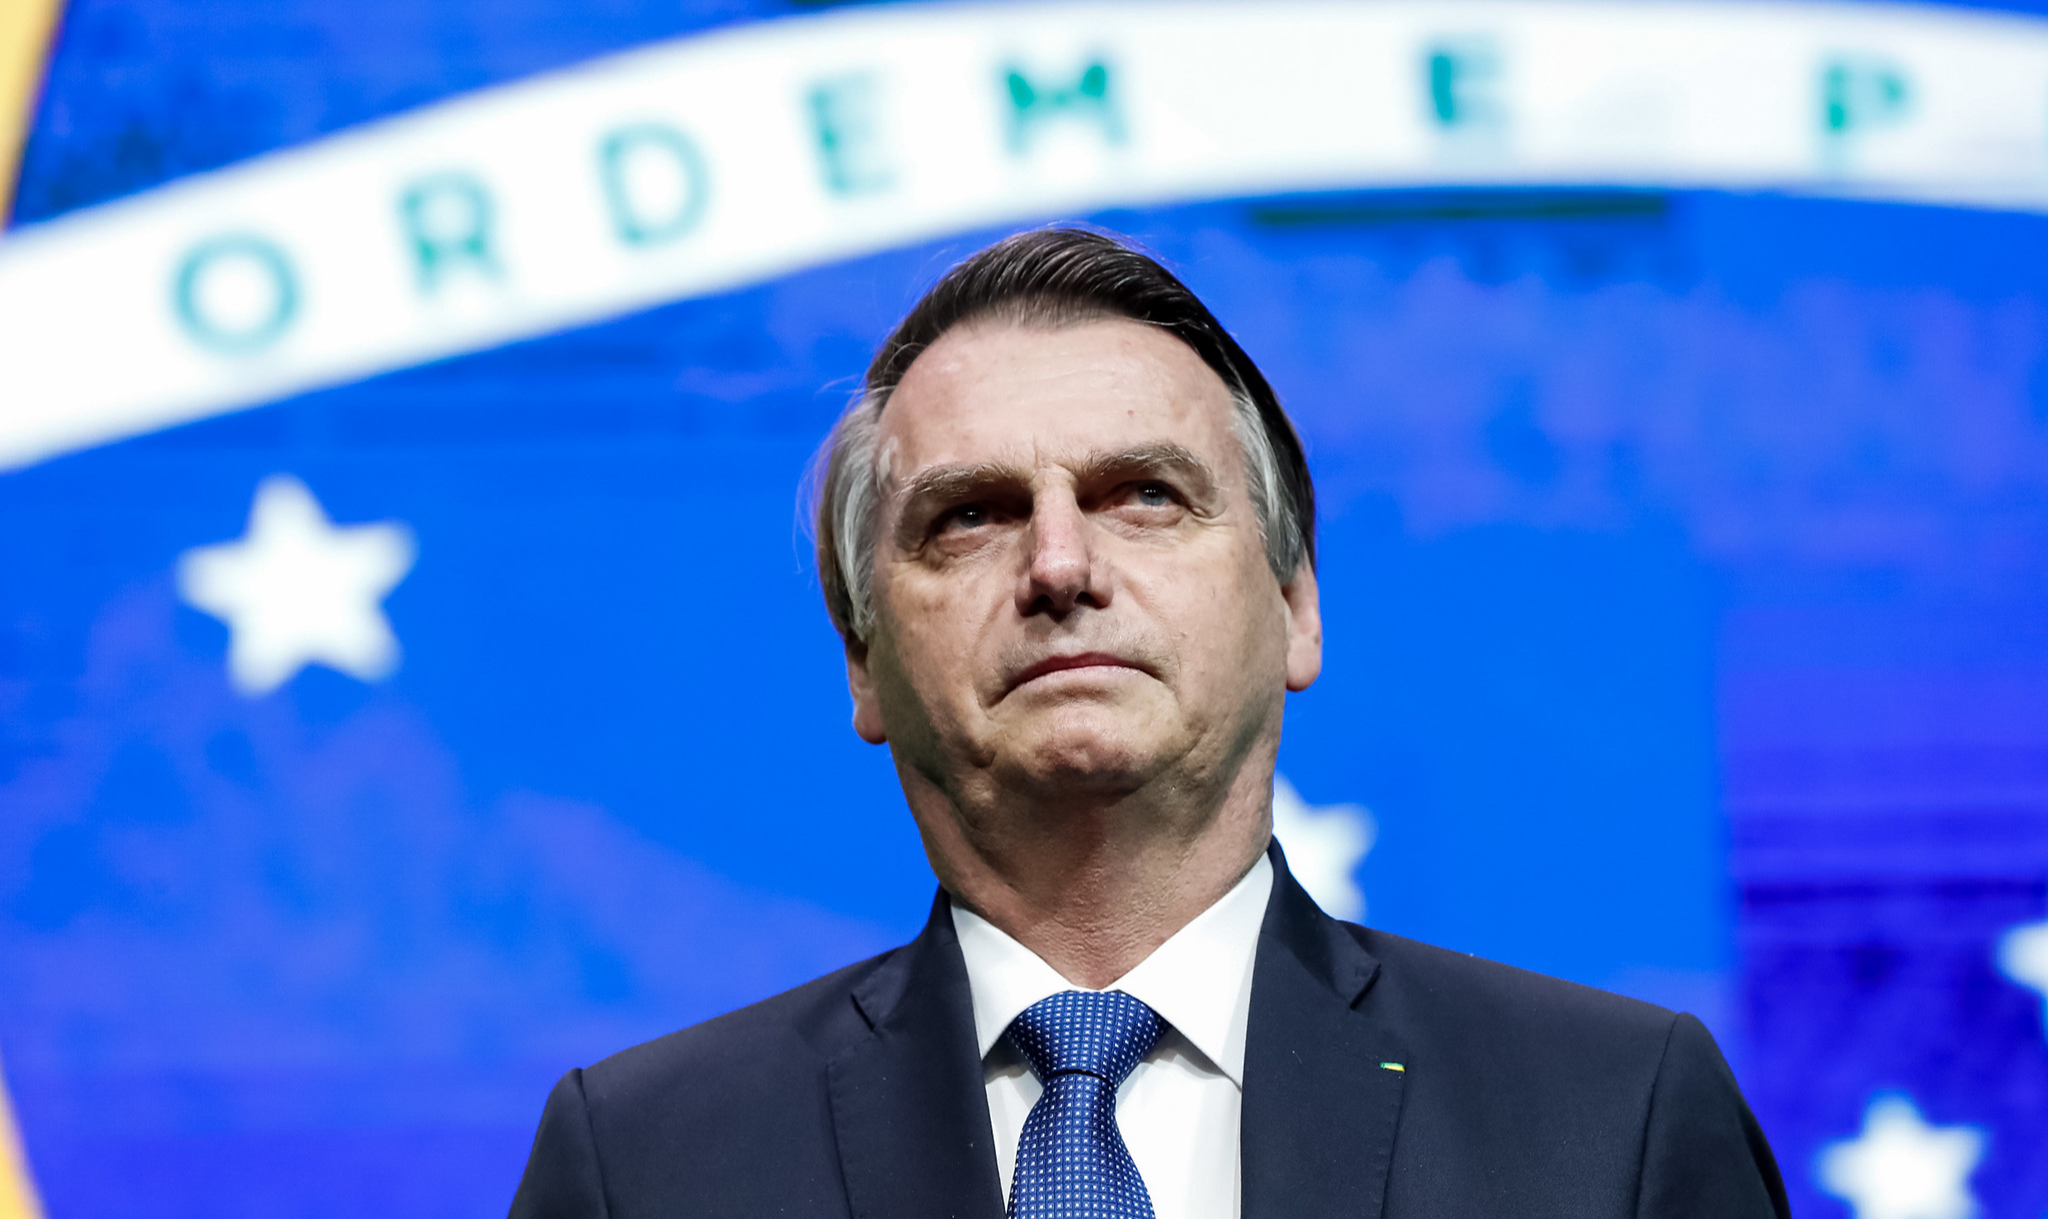 Em entrevista à DW, eurodeputado Martin Häusling diz que presidente brasileiro não compartilha mesmos valores democráticos da União Europeia e que por isso não há base para negociar acordo com Mercosul